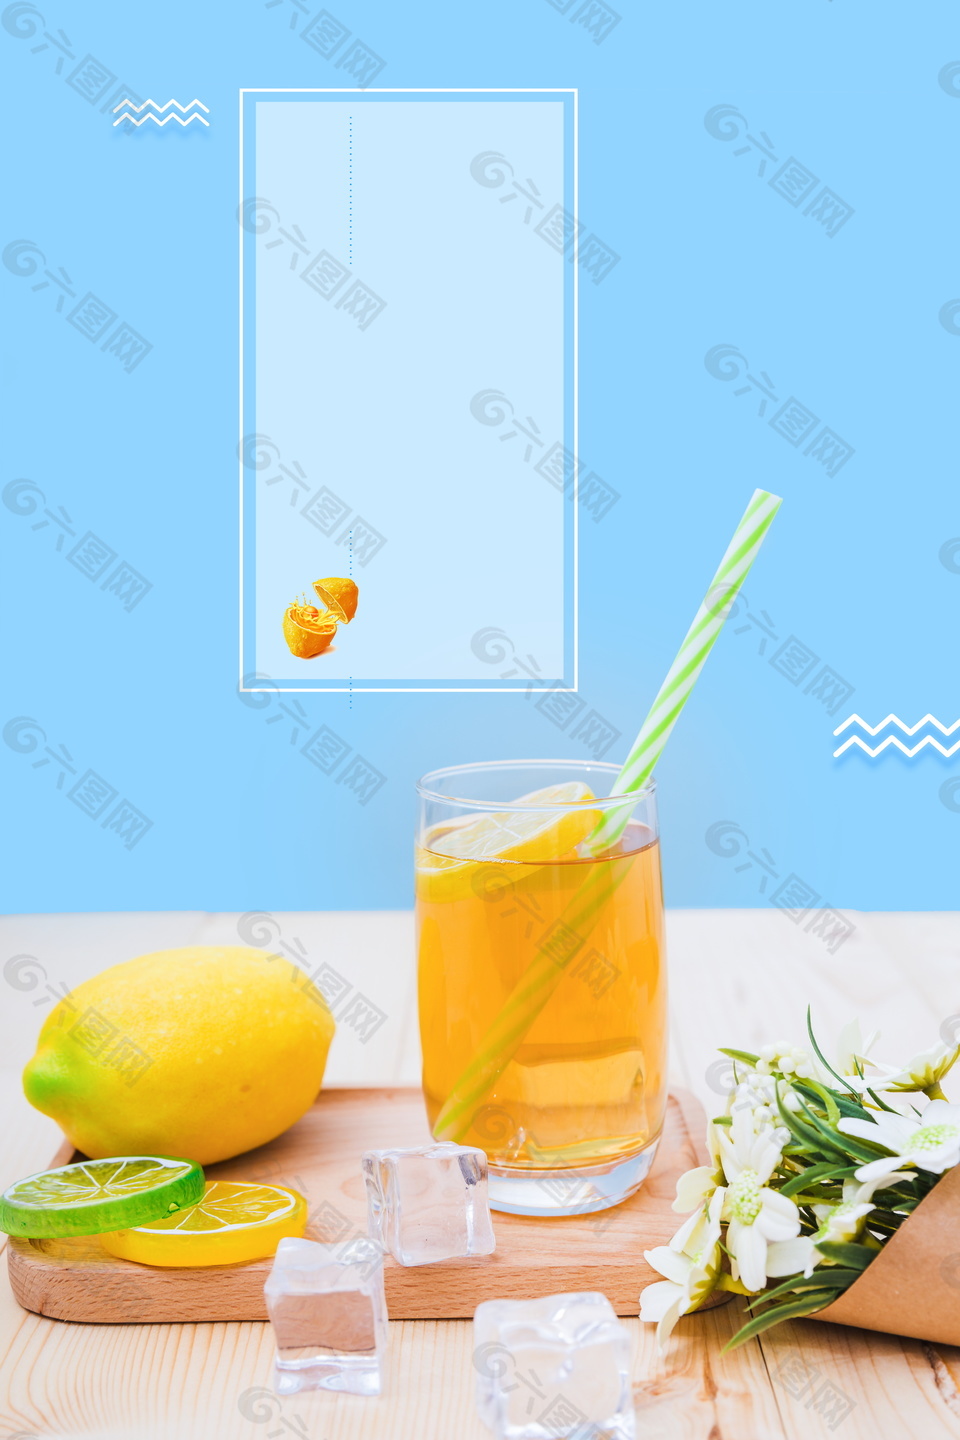 生蚝搭配柠檬饮料广告背景素材